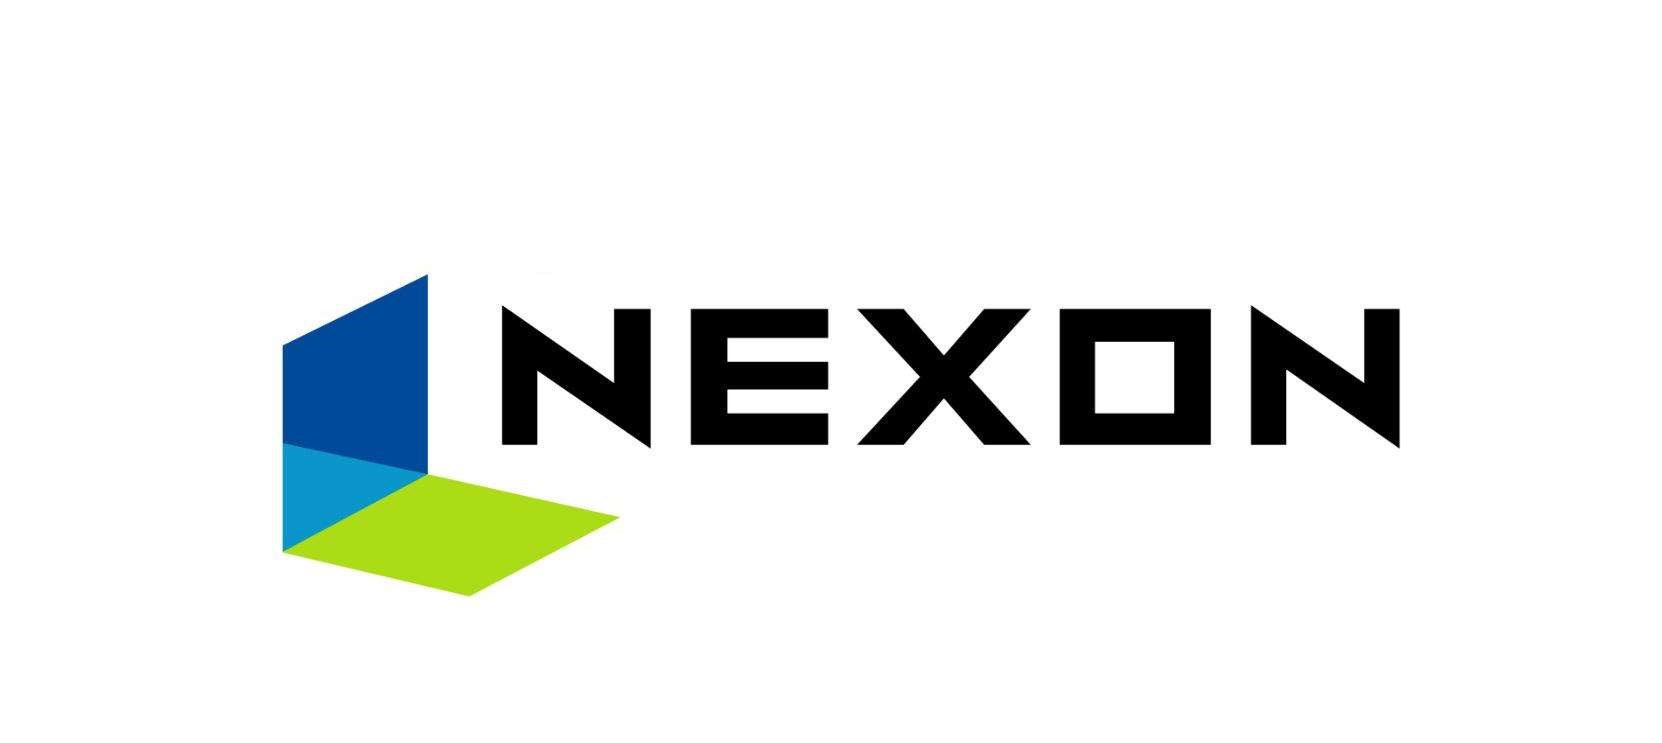 1994年12月 NEXON 公司成立于韩国首尔